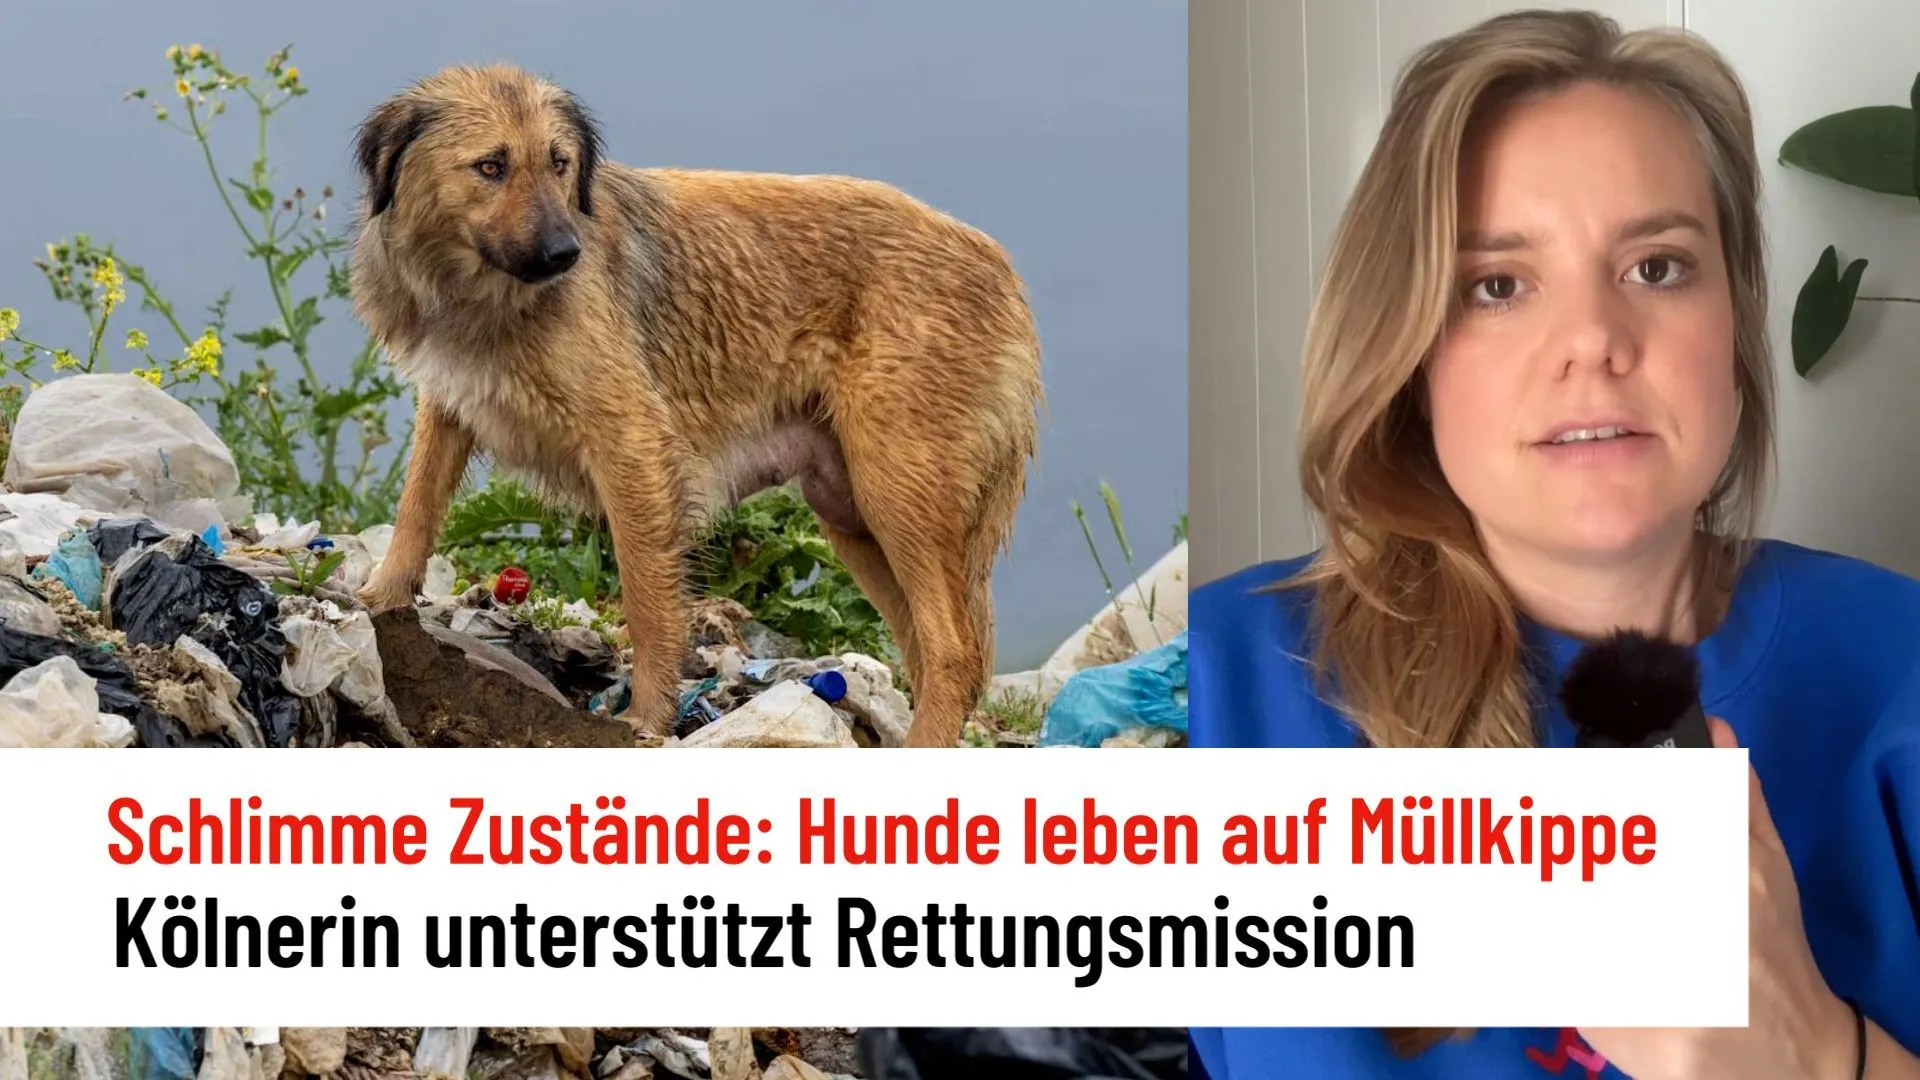 400 Hunde leben auf einer Müllkippe: Ricarda Hofmann unterstützt Rettungsmission